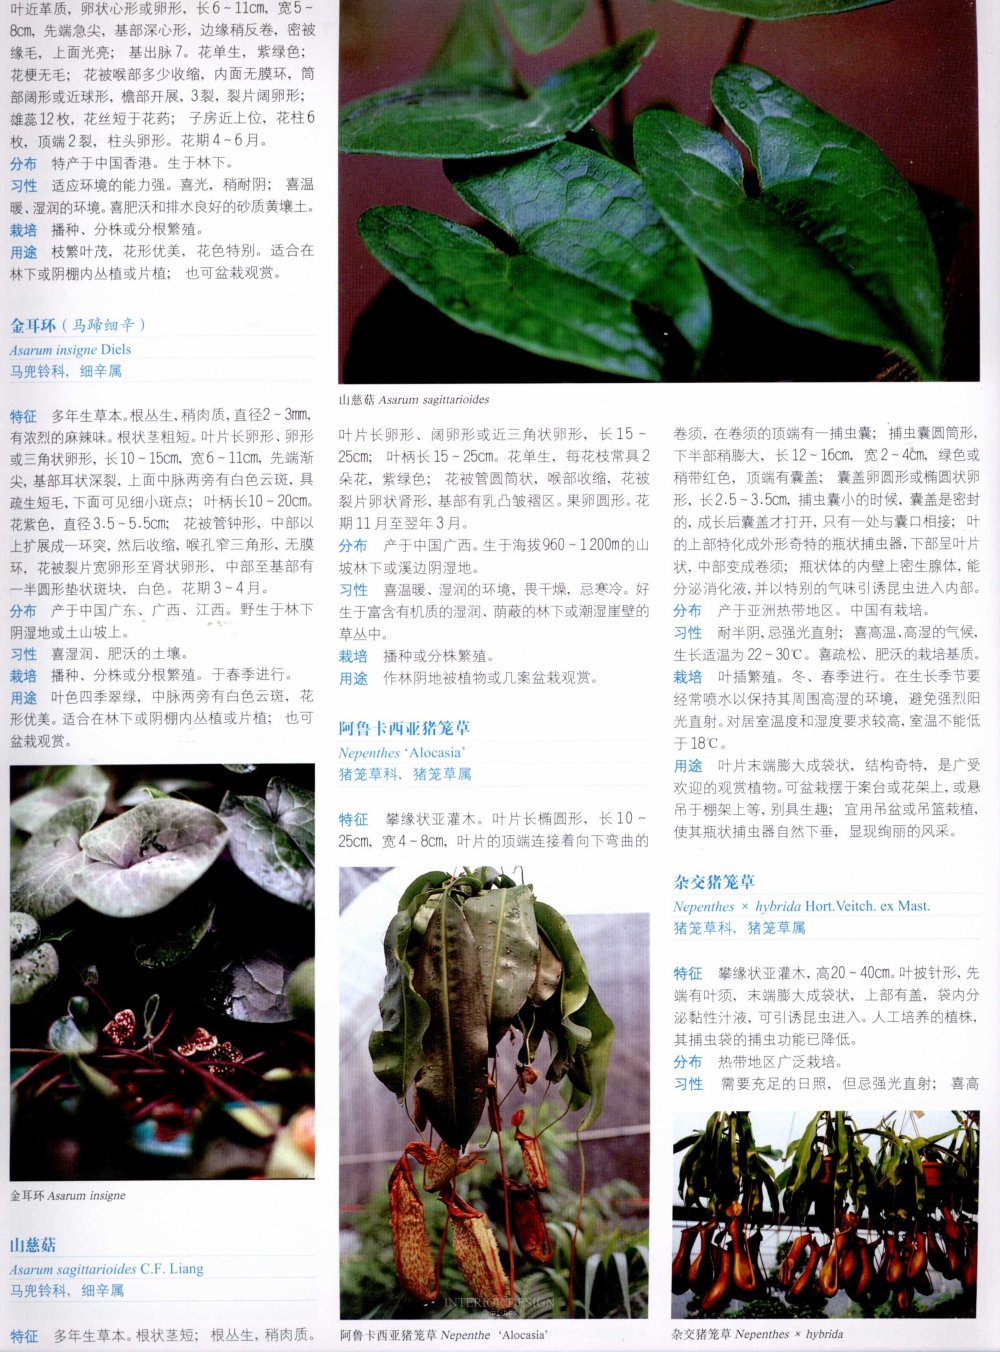 中国景观植物上(中)_0276.jpg